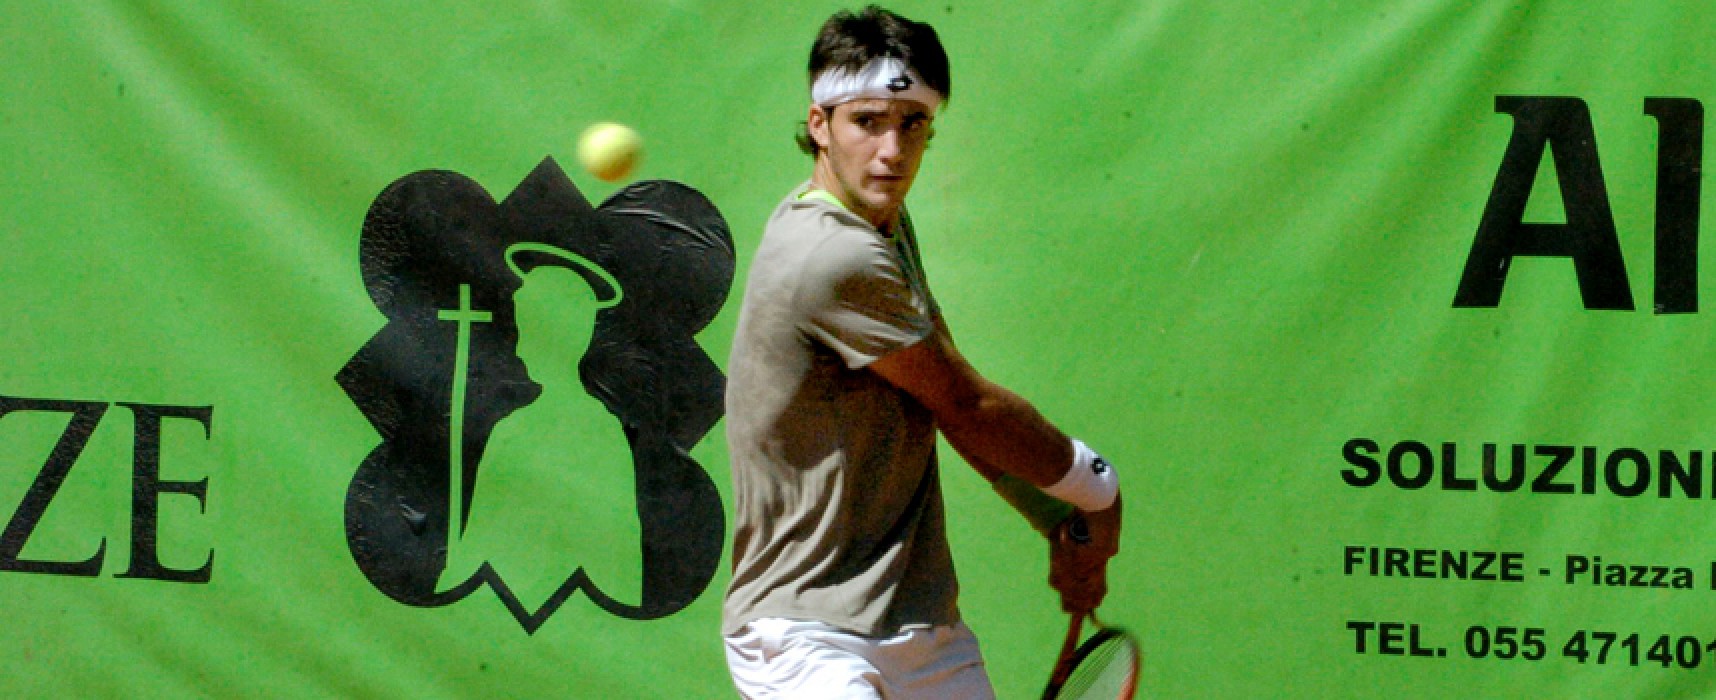 Wimbledon: Pellegrino eliminato anche in doppio